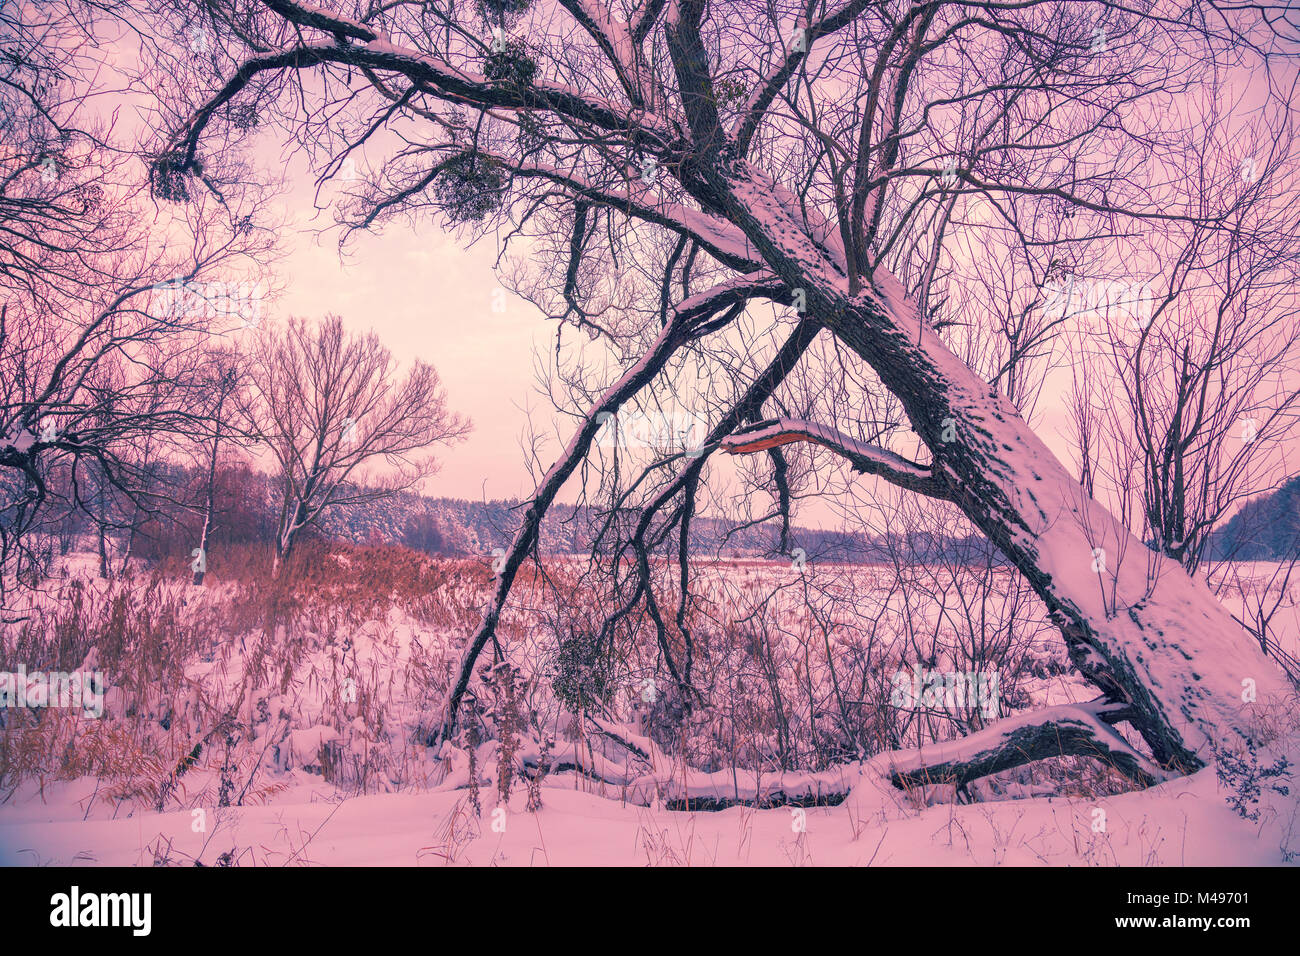 Snowy rural landscape. Tree near frozen lake Stock Photo